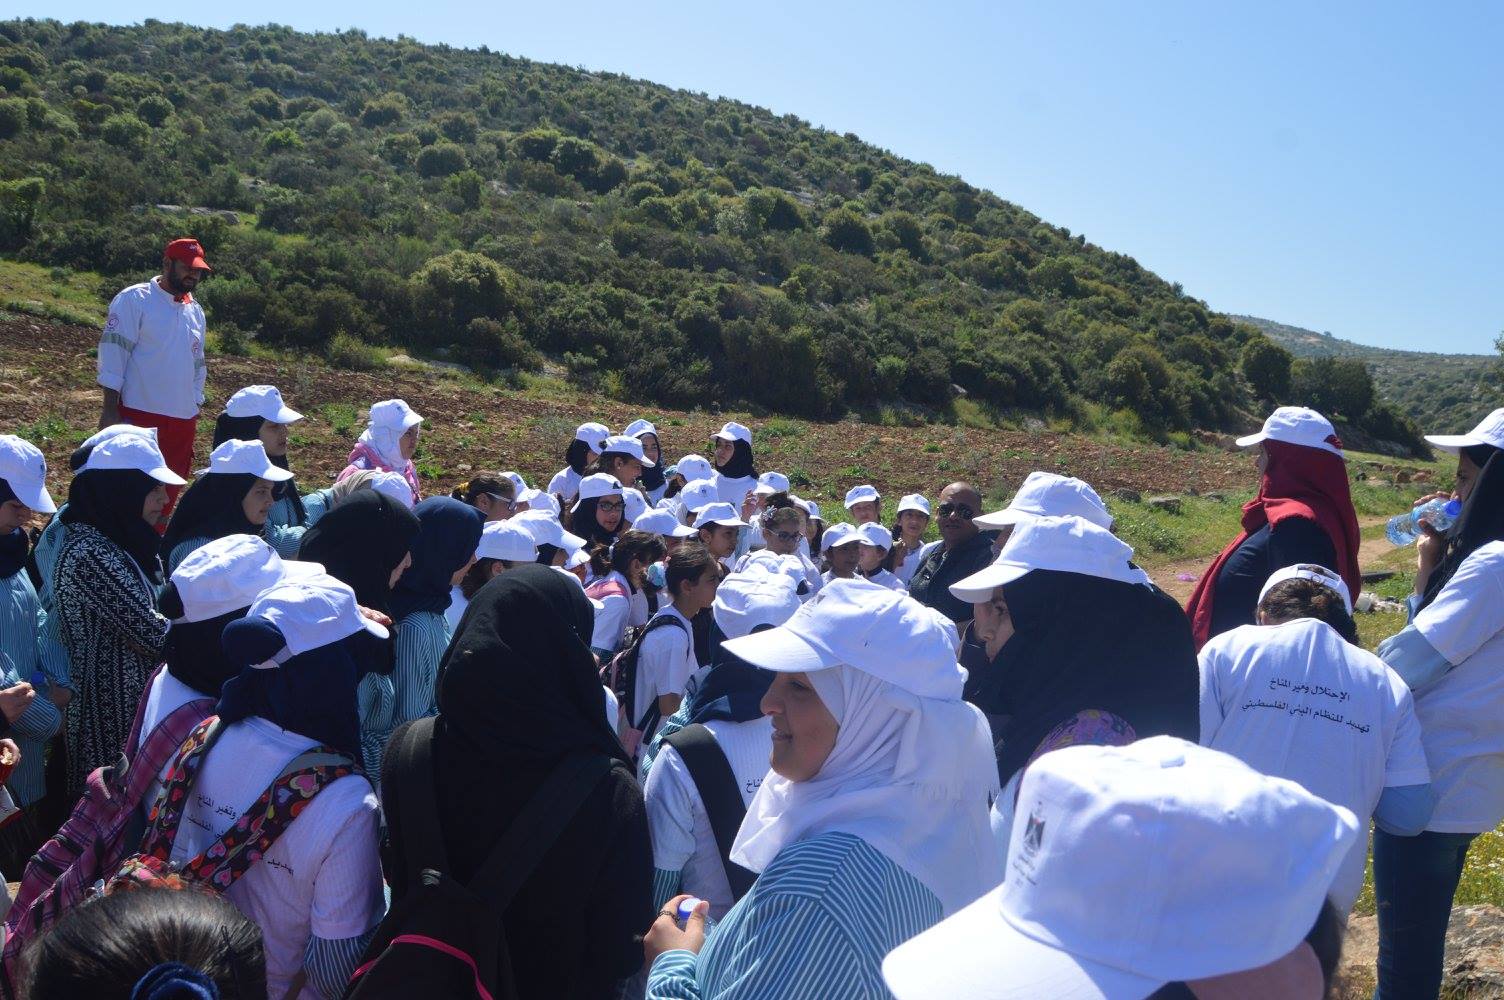 جولة في محمية ام التوت  جنين بمشاركة 100 طالبة  تحت شعار" اميرات كنعانيات عاشقات للارض والطبيعة" 